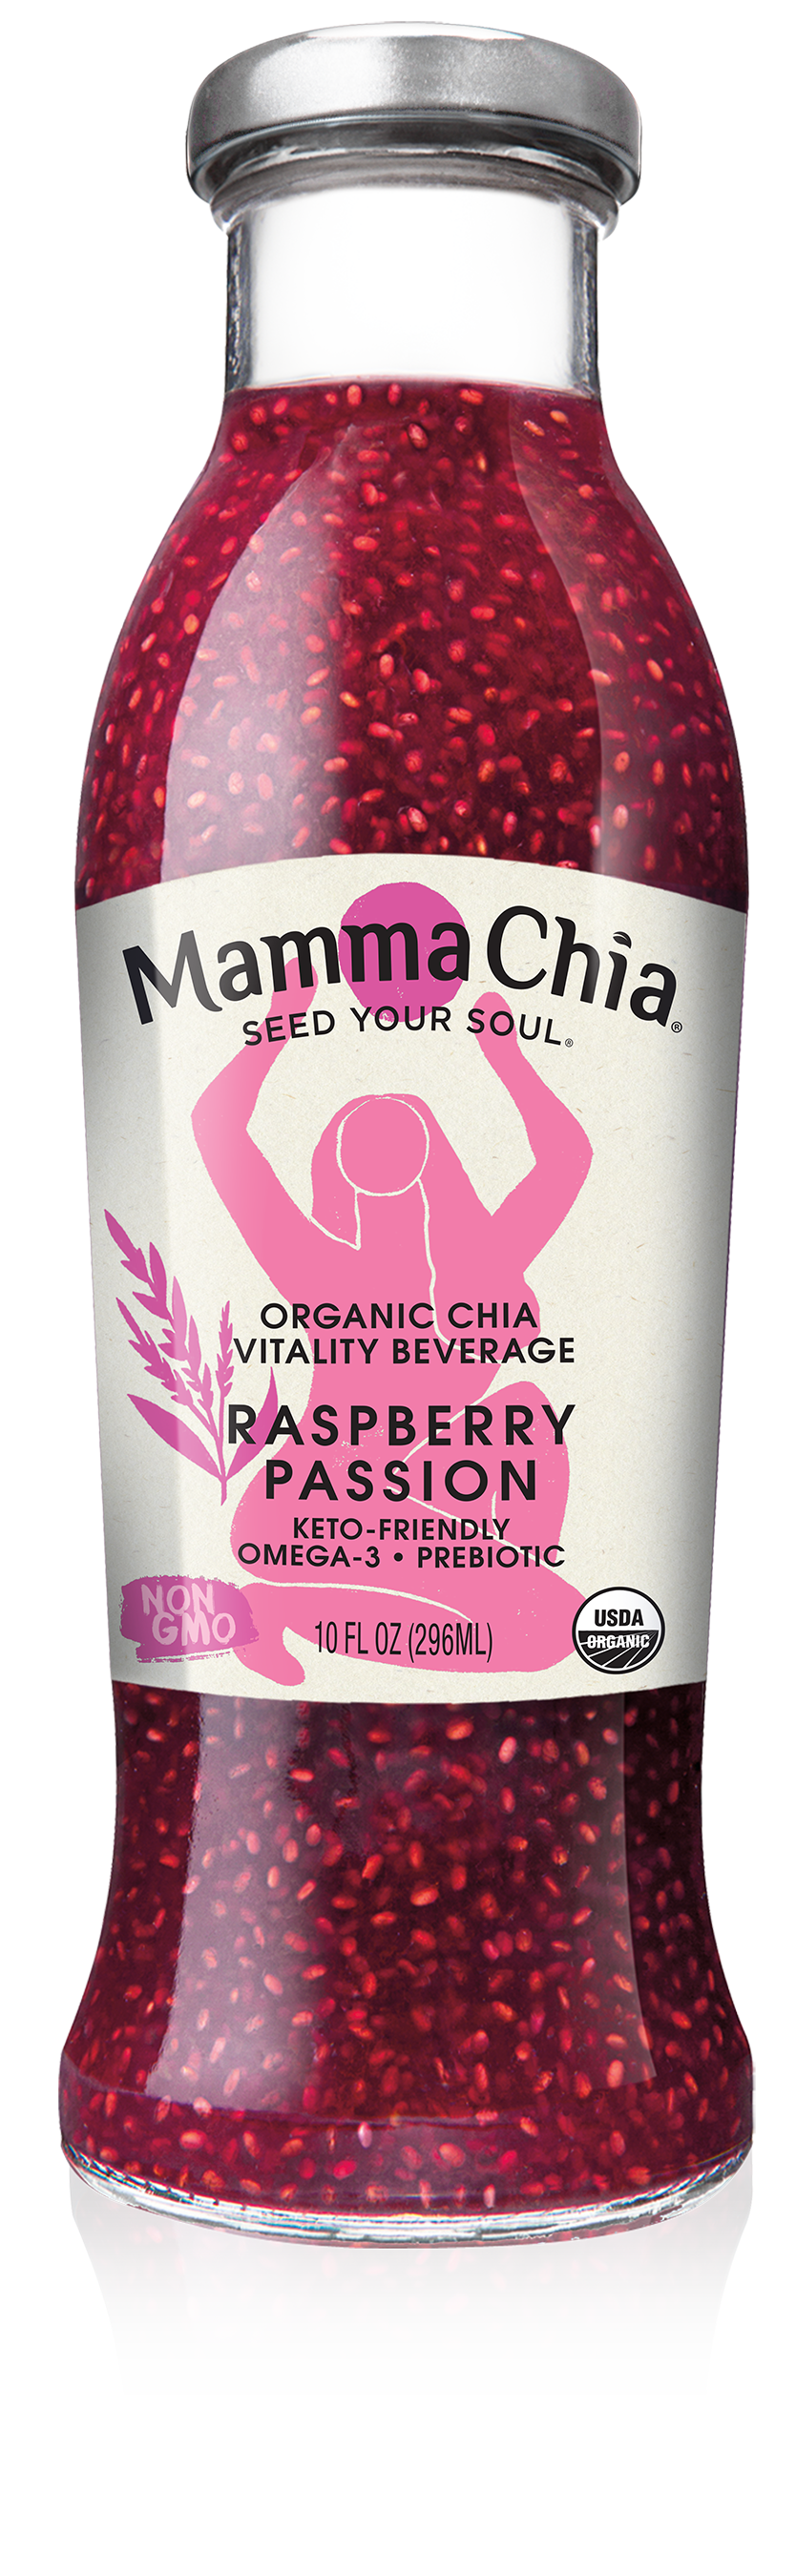 Mamma Chia Raspberry Passion Organic Chia Beverage 12 units per case 10.0 fl